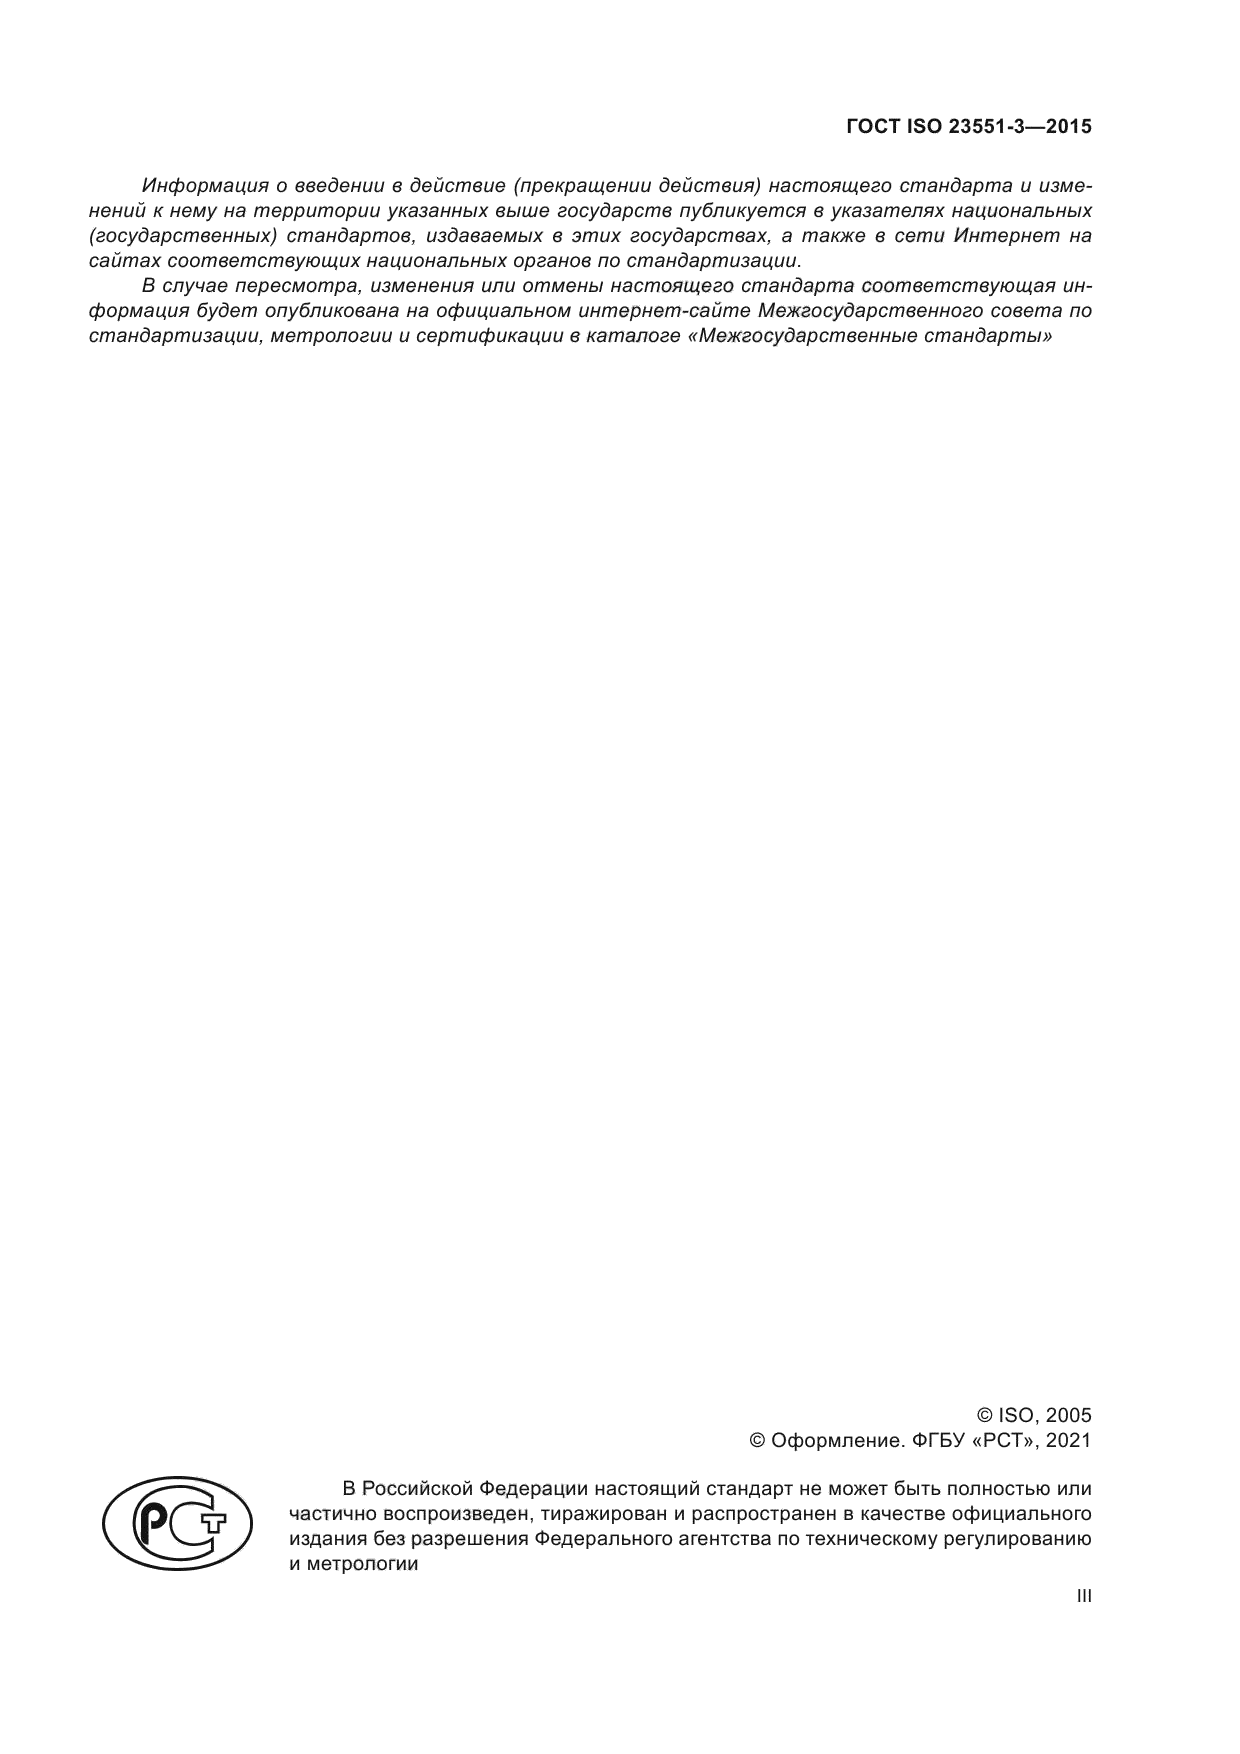 ГОСТ ISO 23551-3-2015